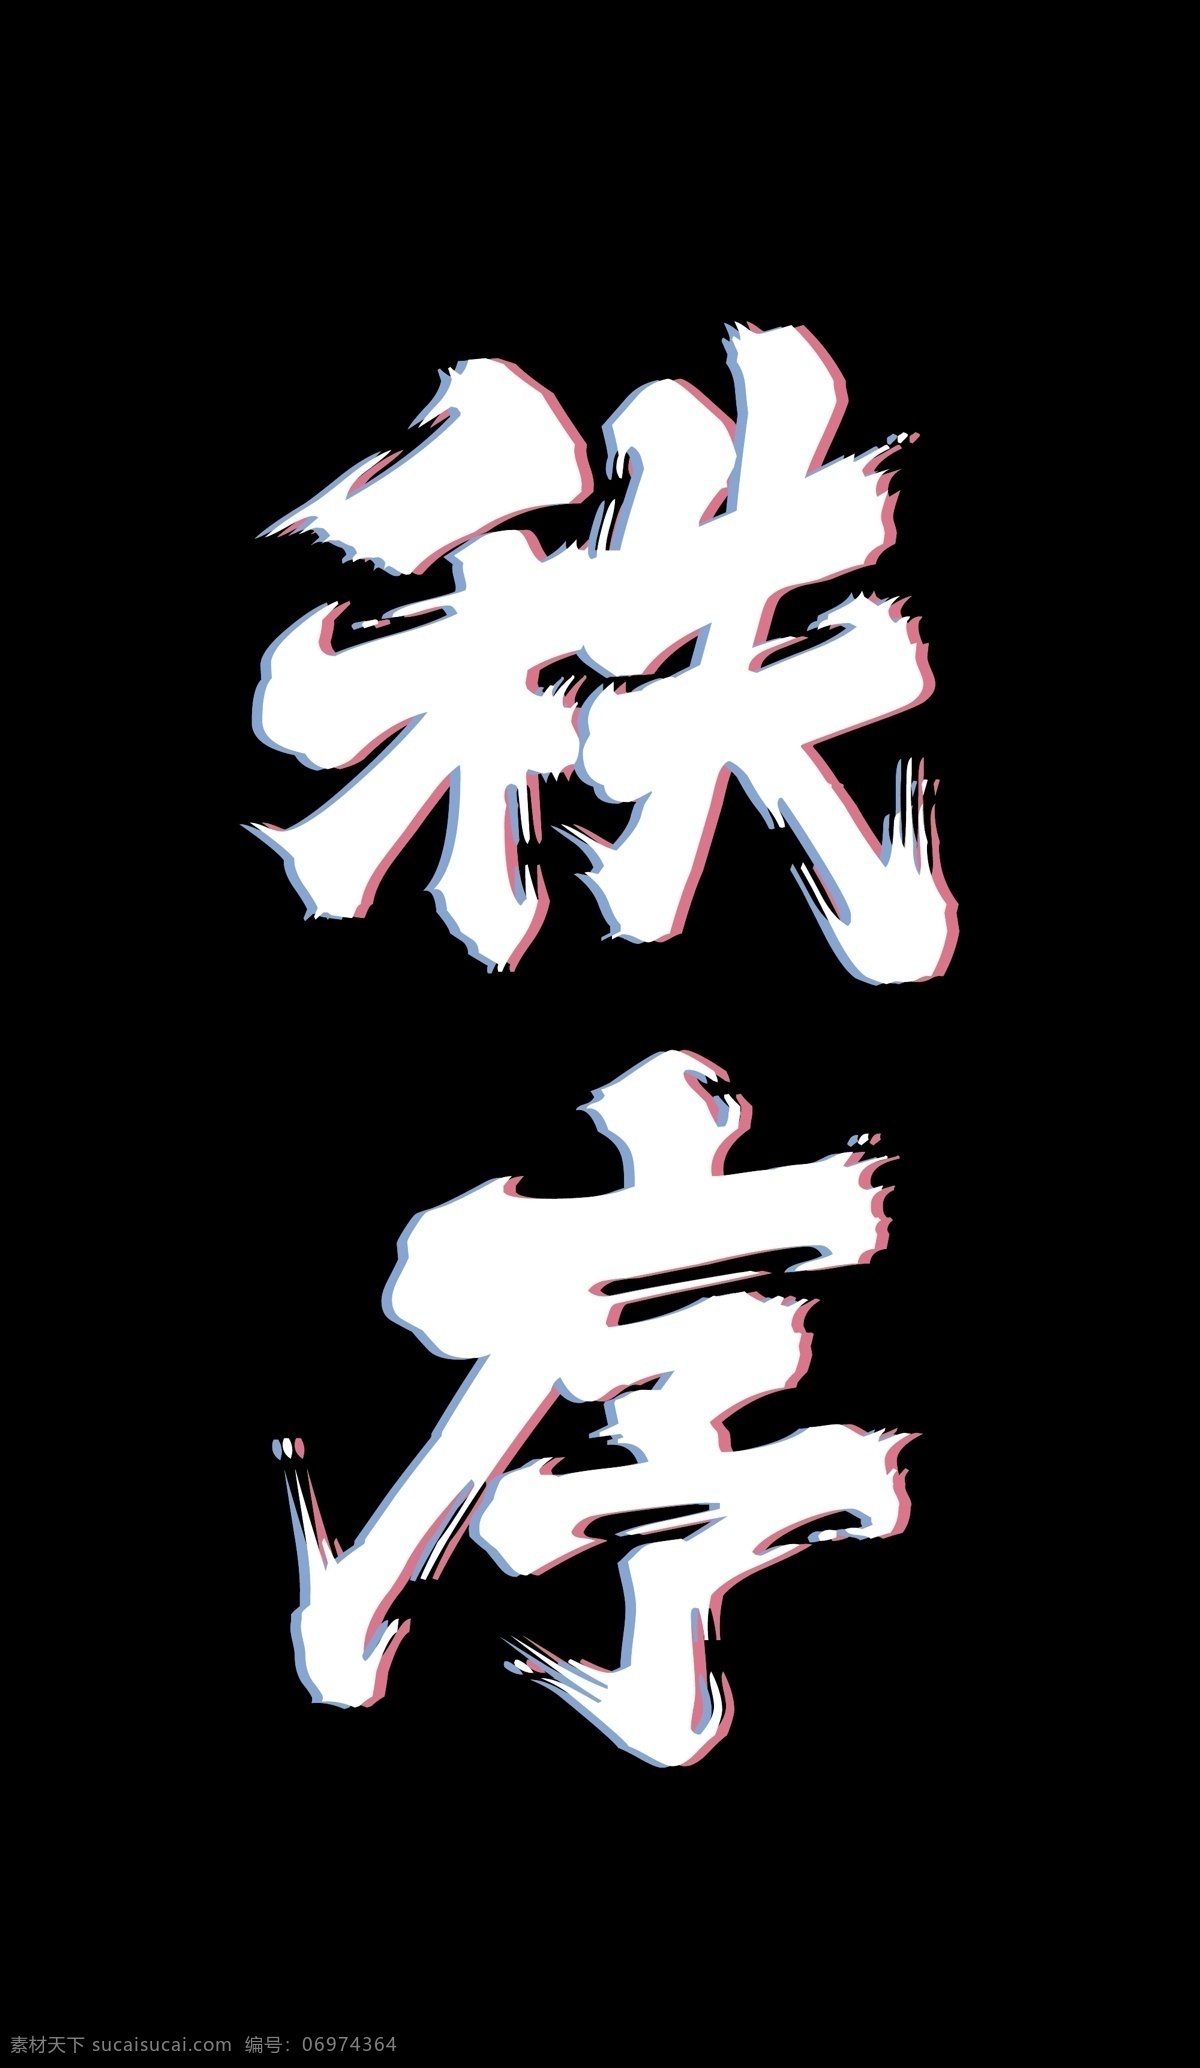 秩序 文字 logo 黑色壁纸 文字logo 中国风 迷幻 字体效果